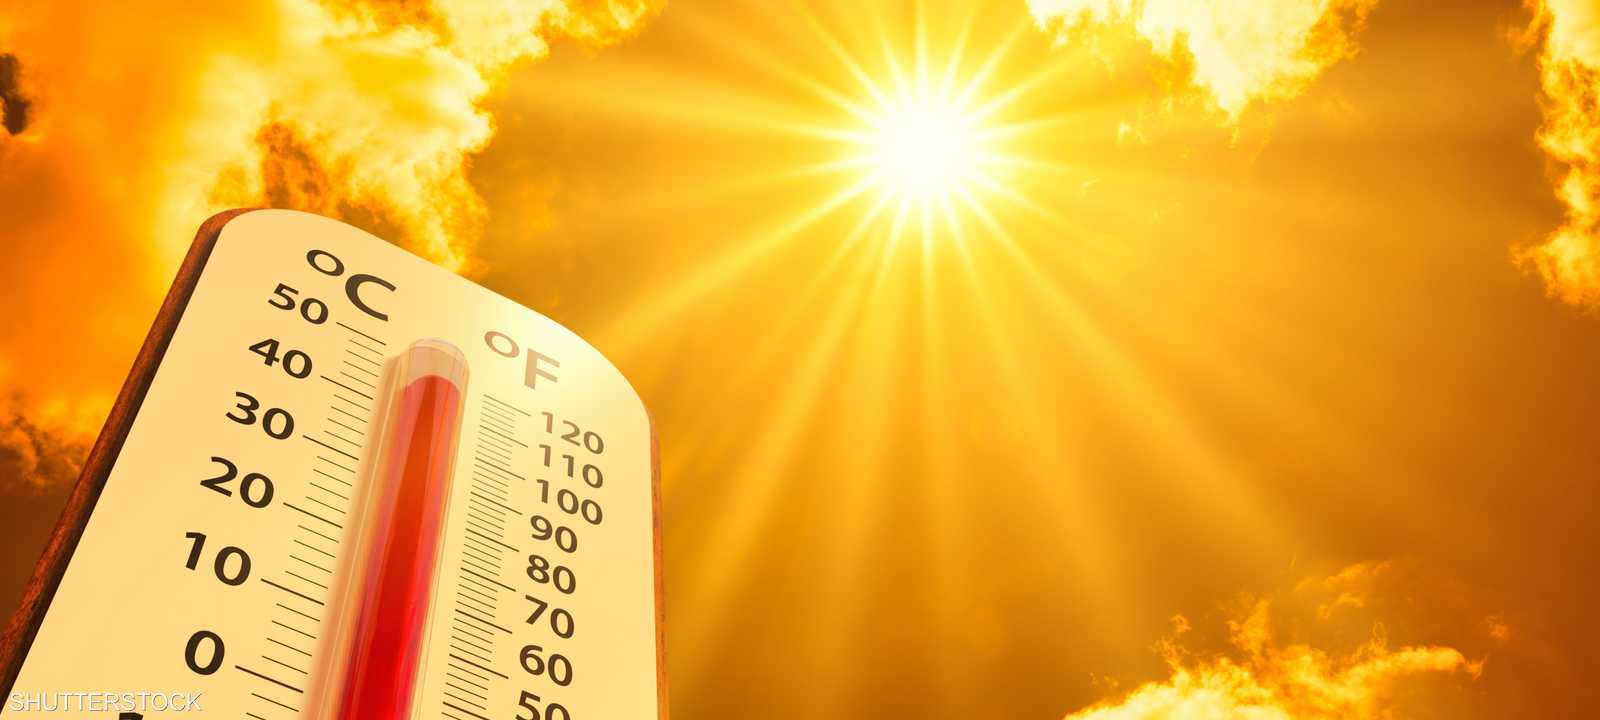 ارتفاع درجات الحرارة يهدد بمخاطر اقتصادية عالمية